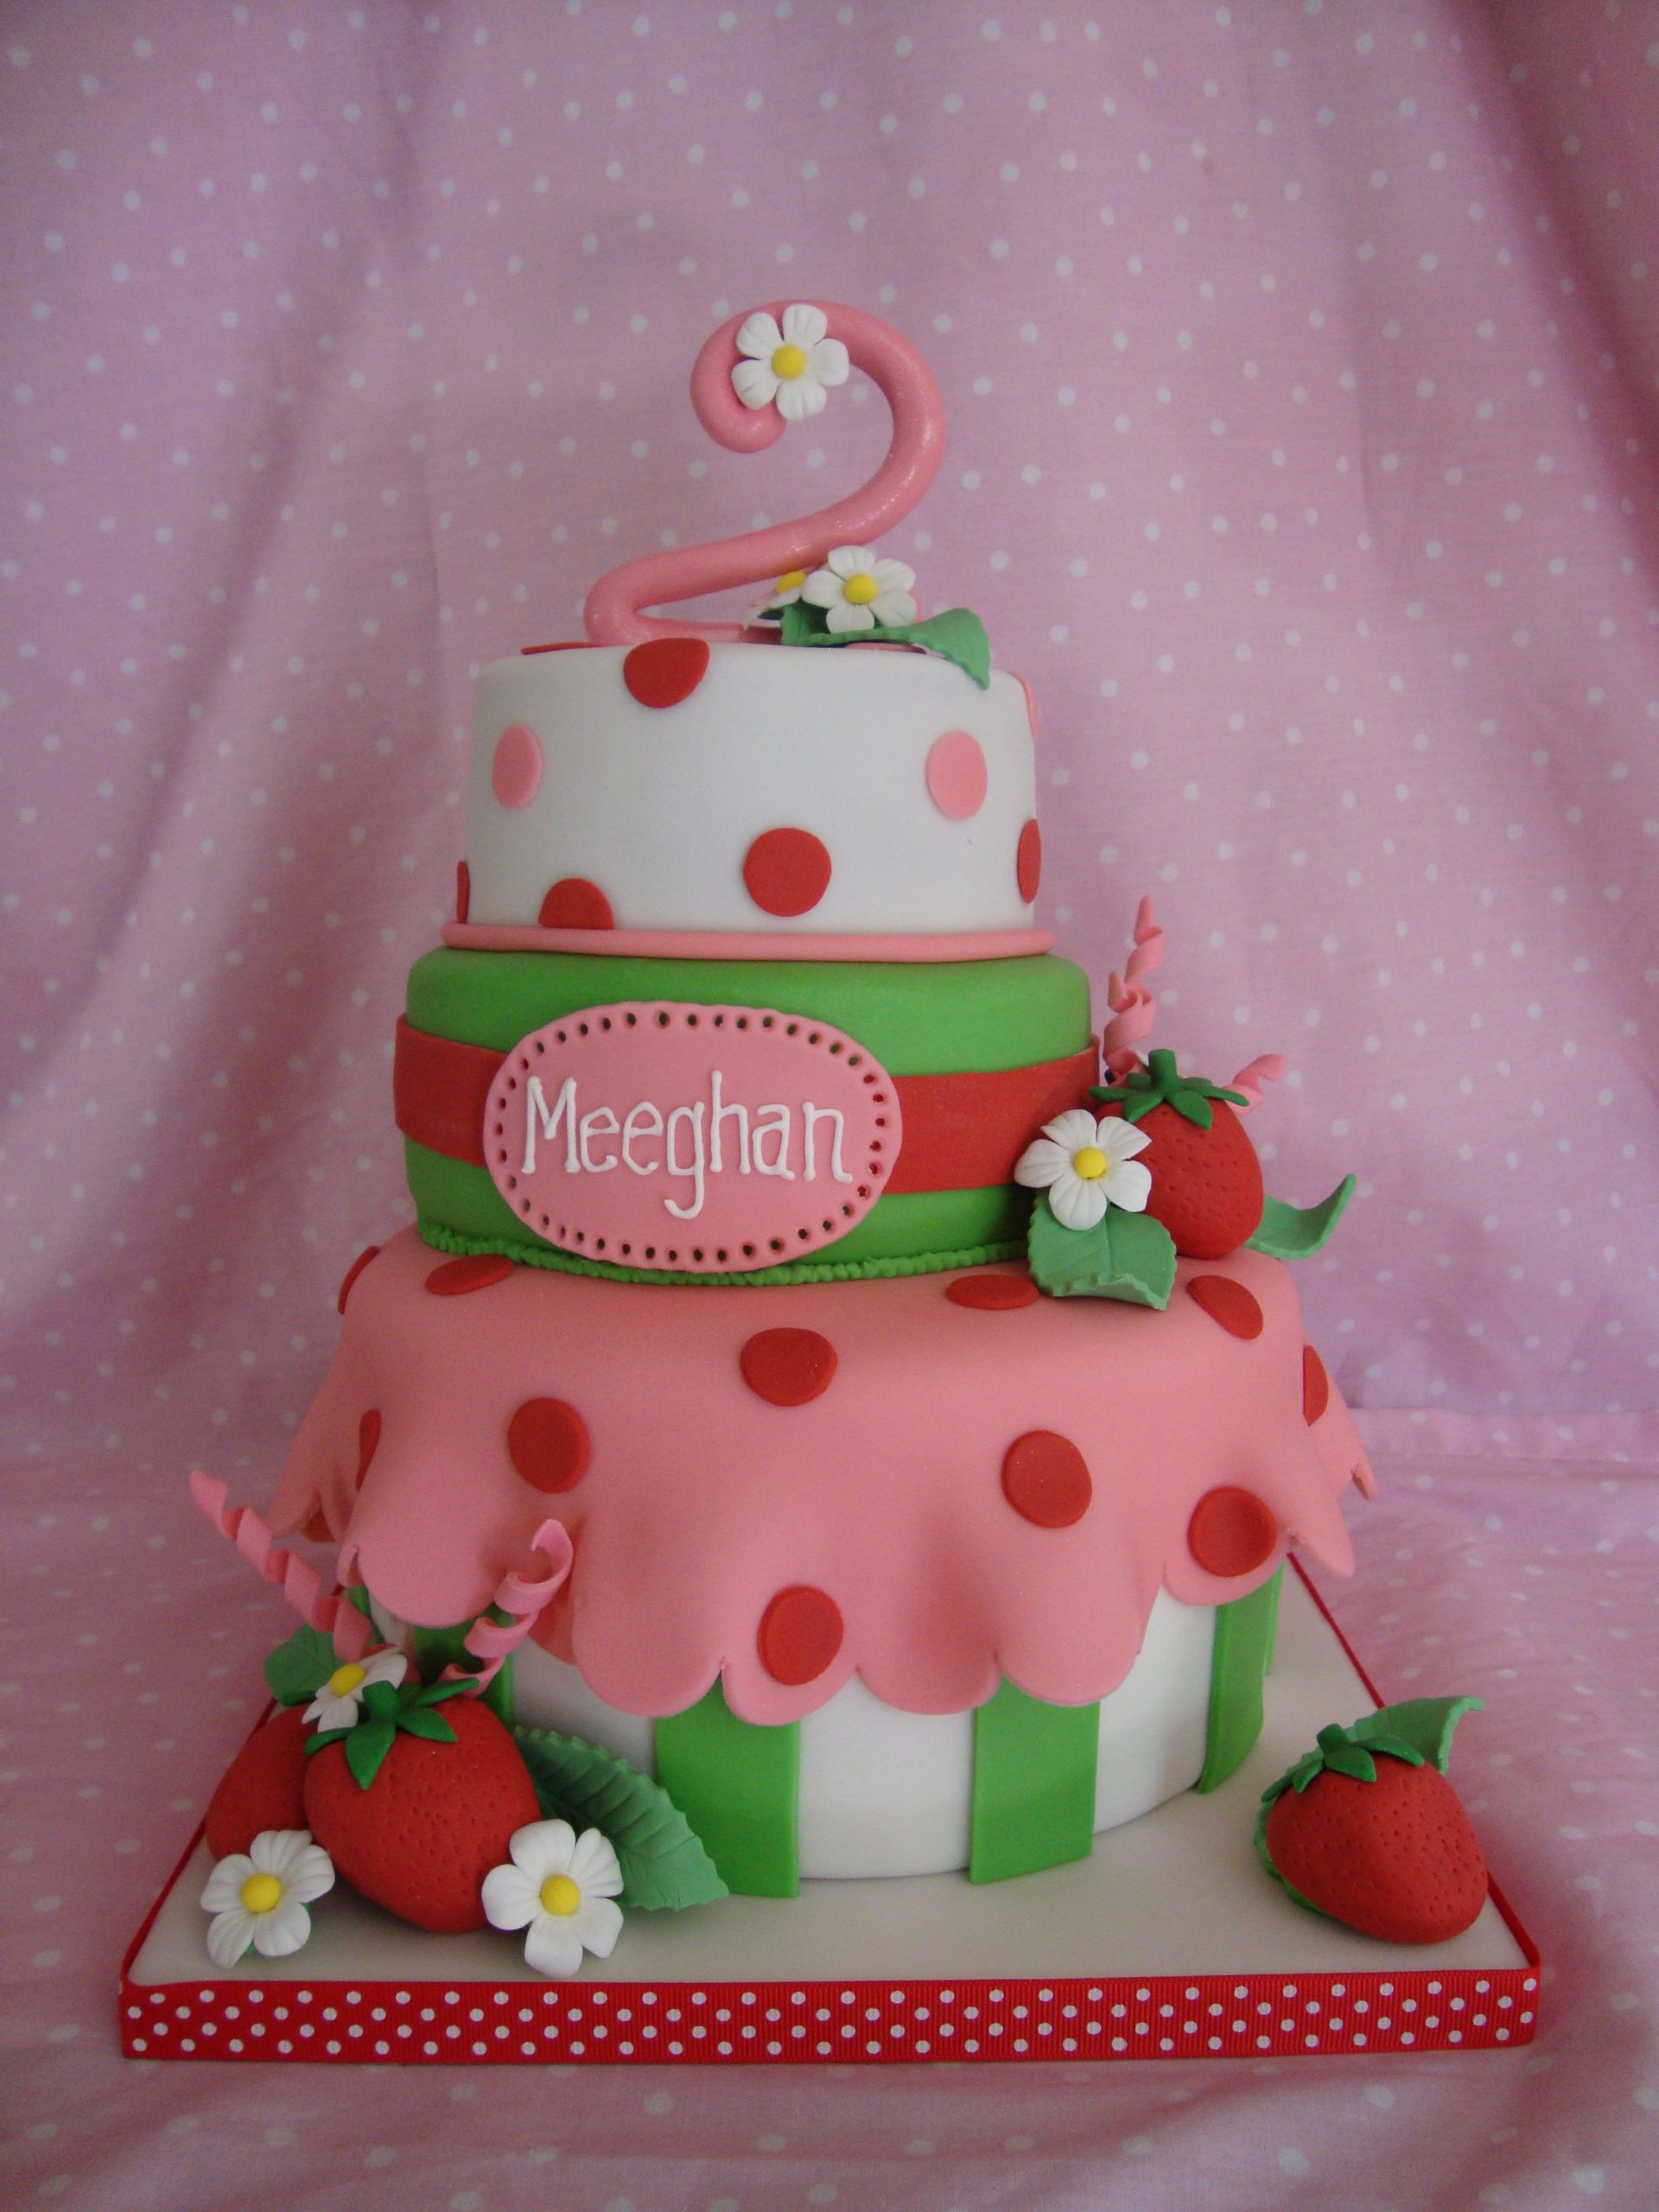 Strawberry Shortcake Birthday Cake Recipes
 Cute Strawberry Shortcake Theme Cake